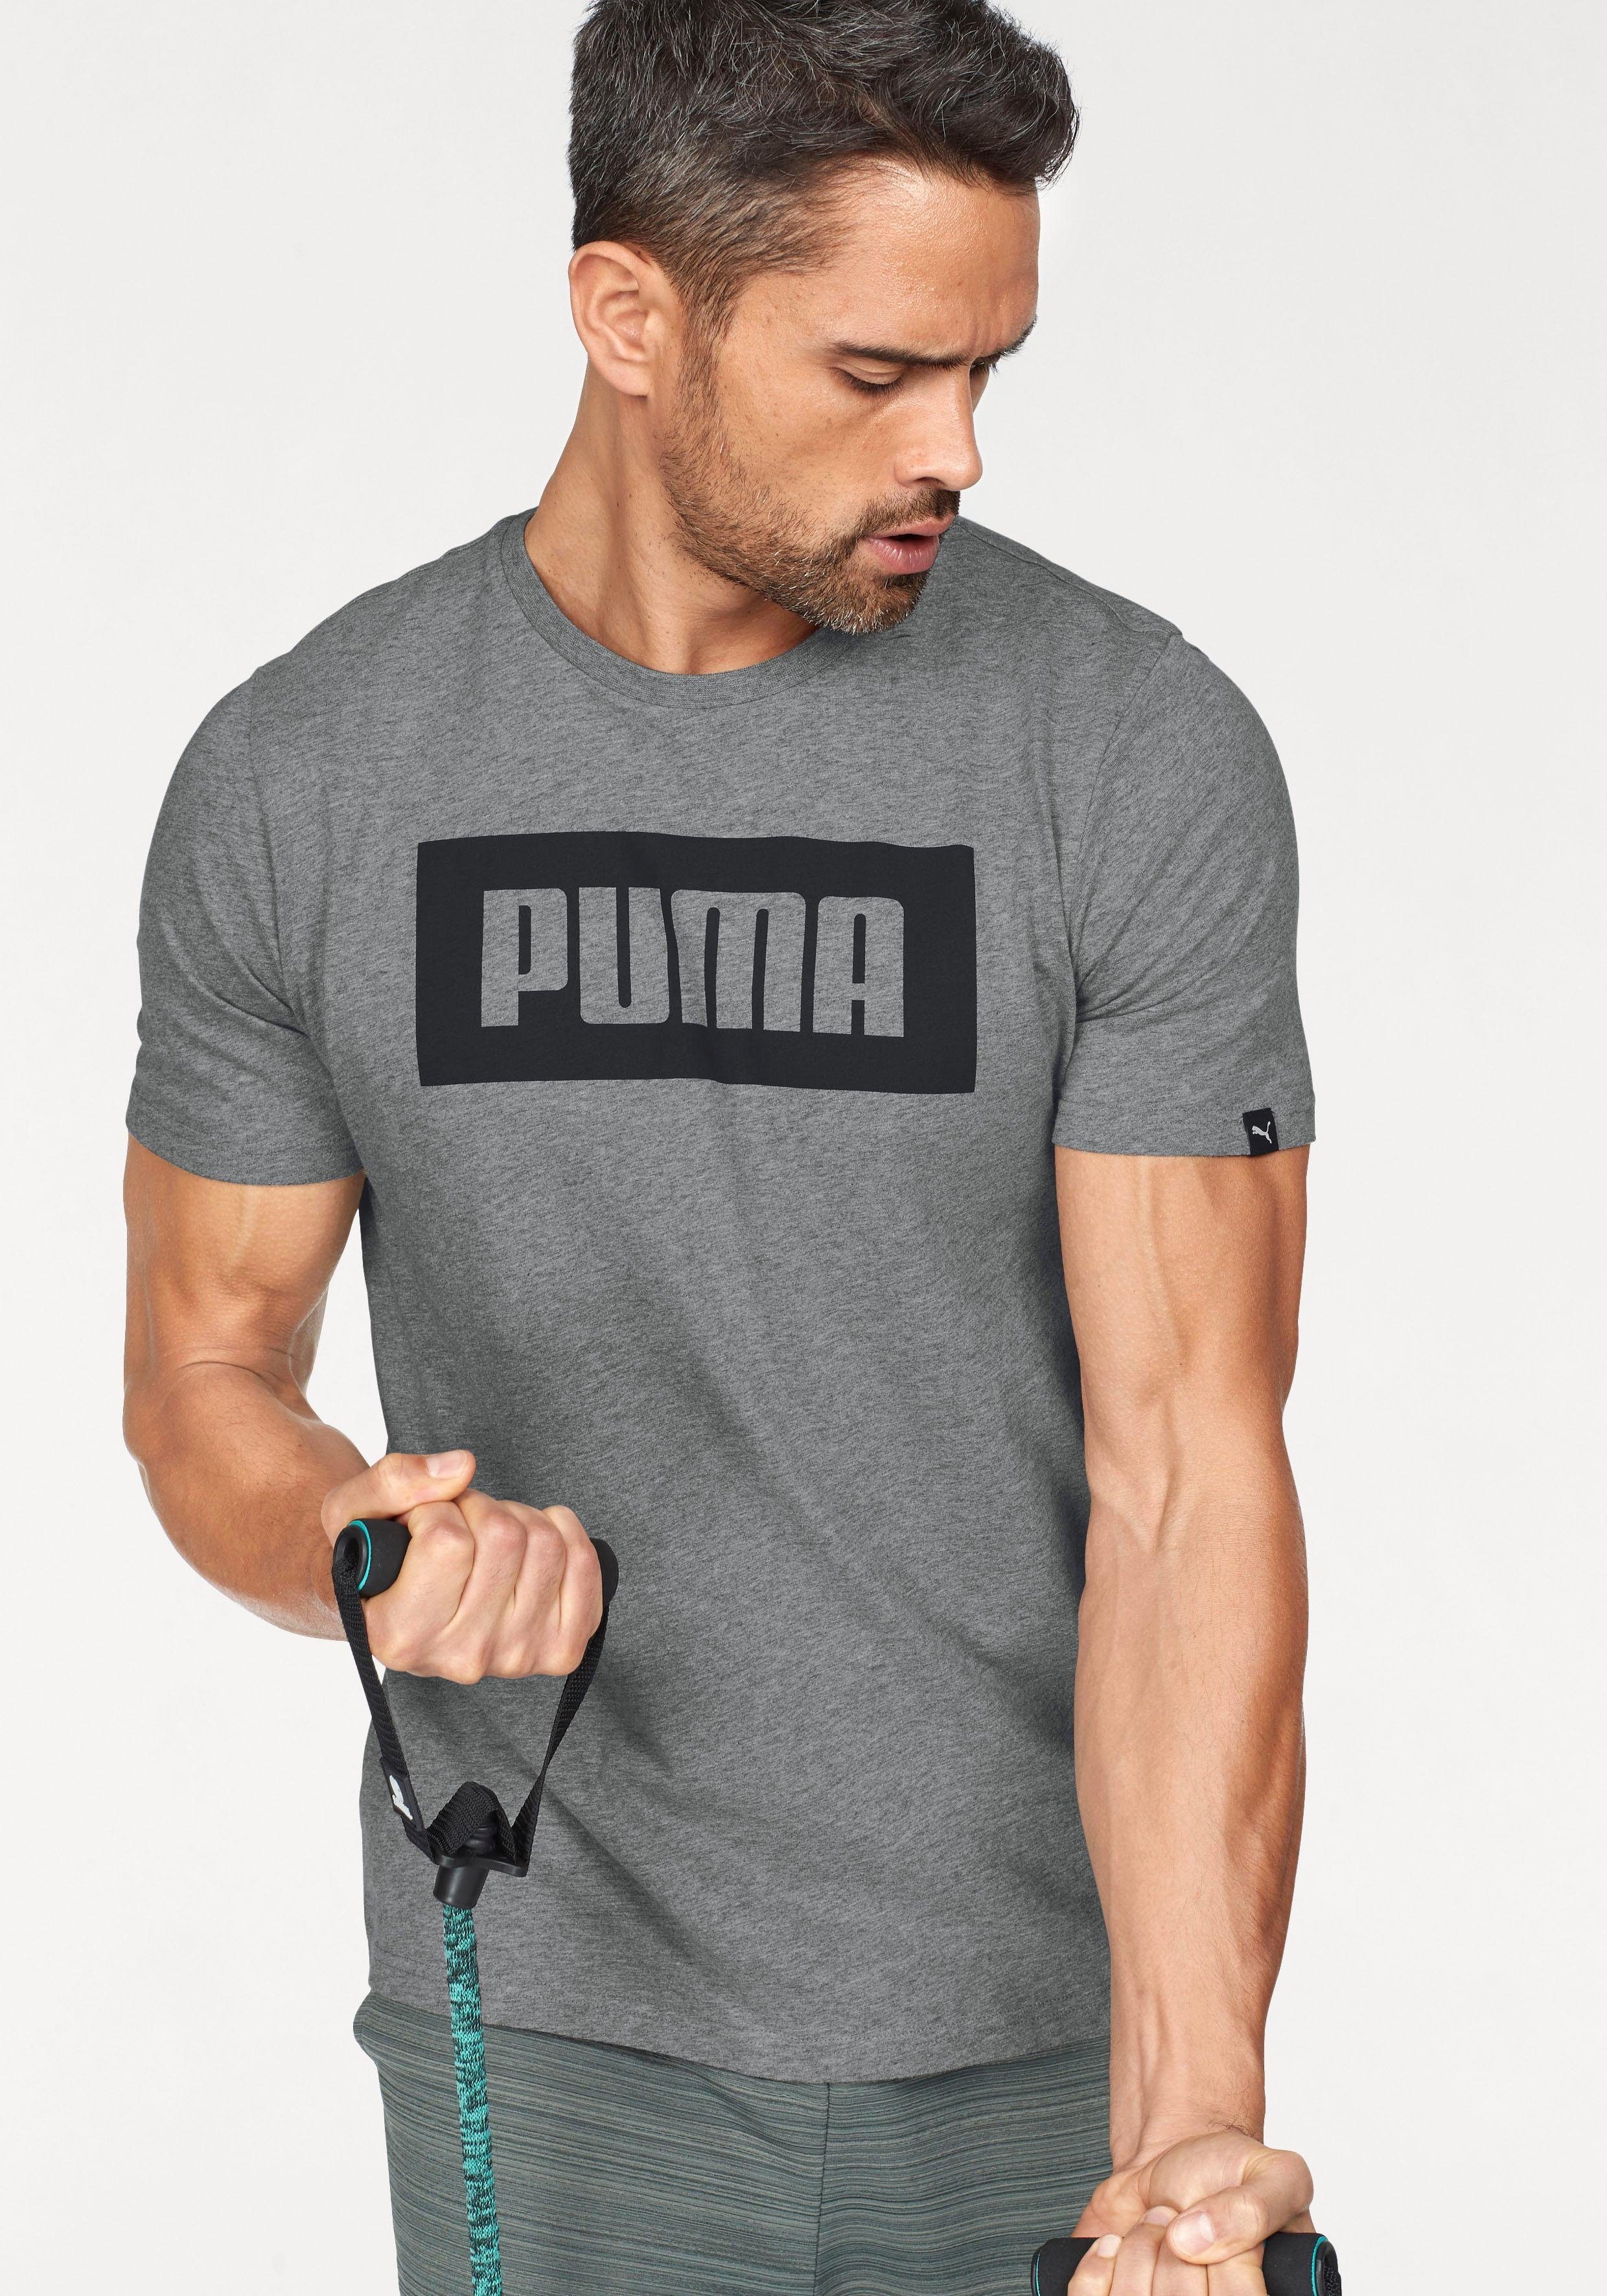 Puma NU 15% KORTING: PUMA T-shirt